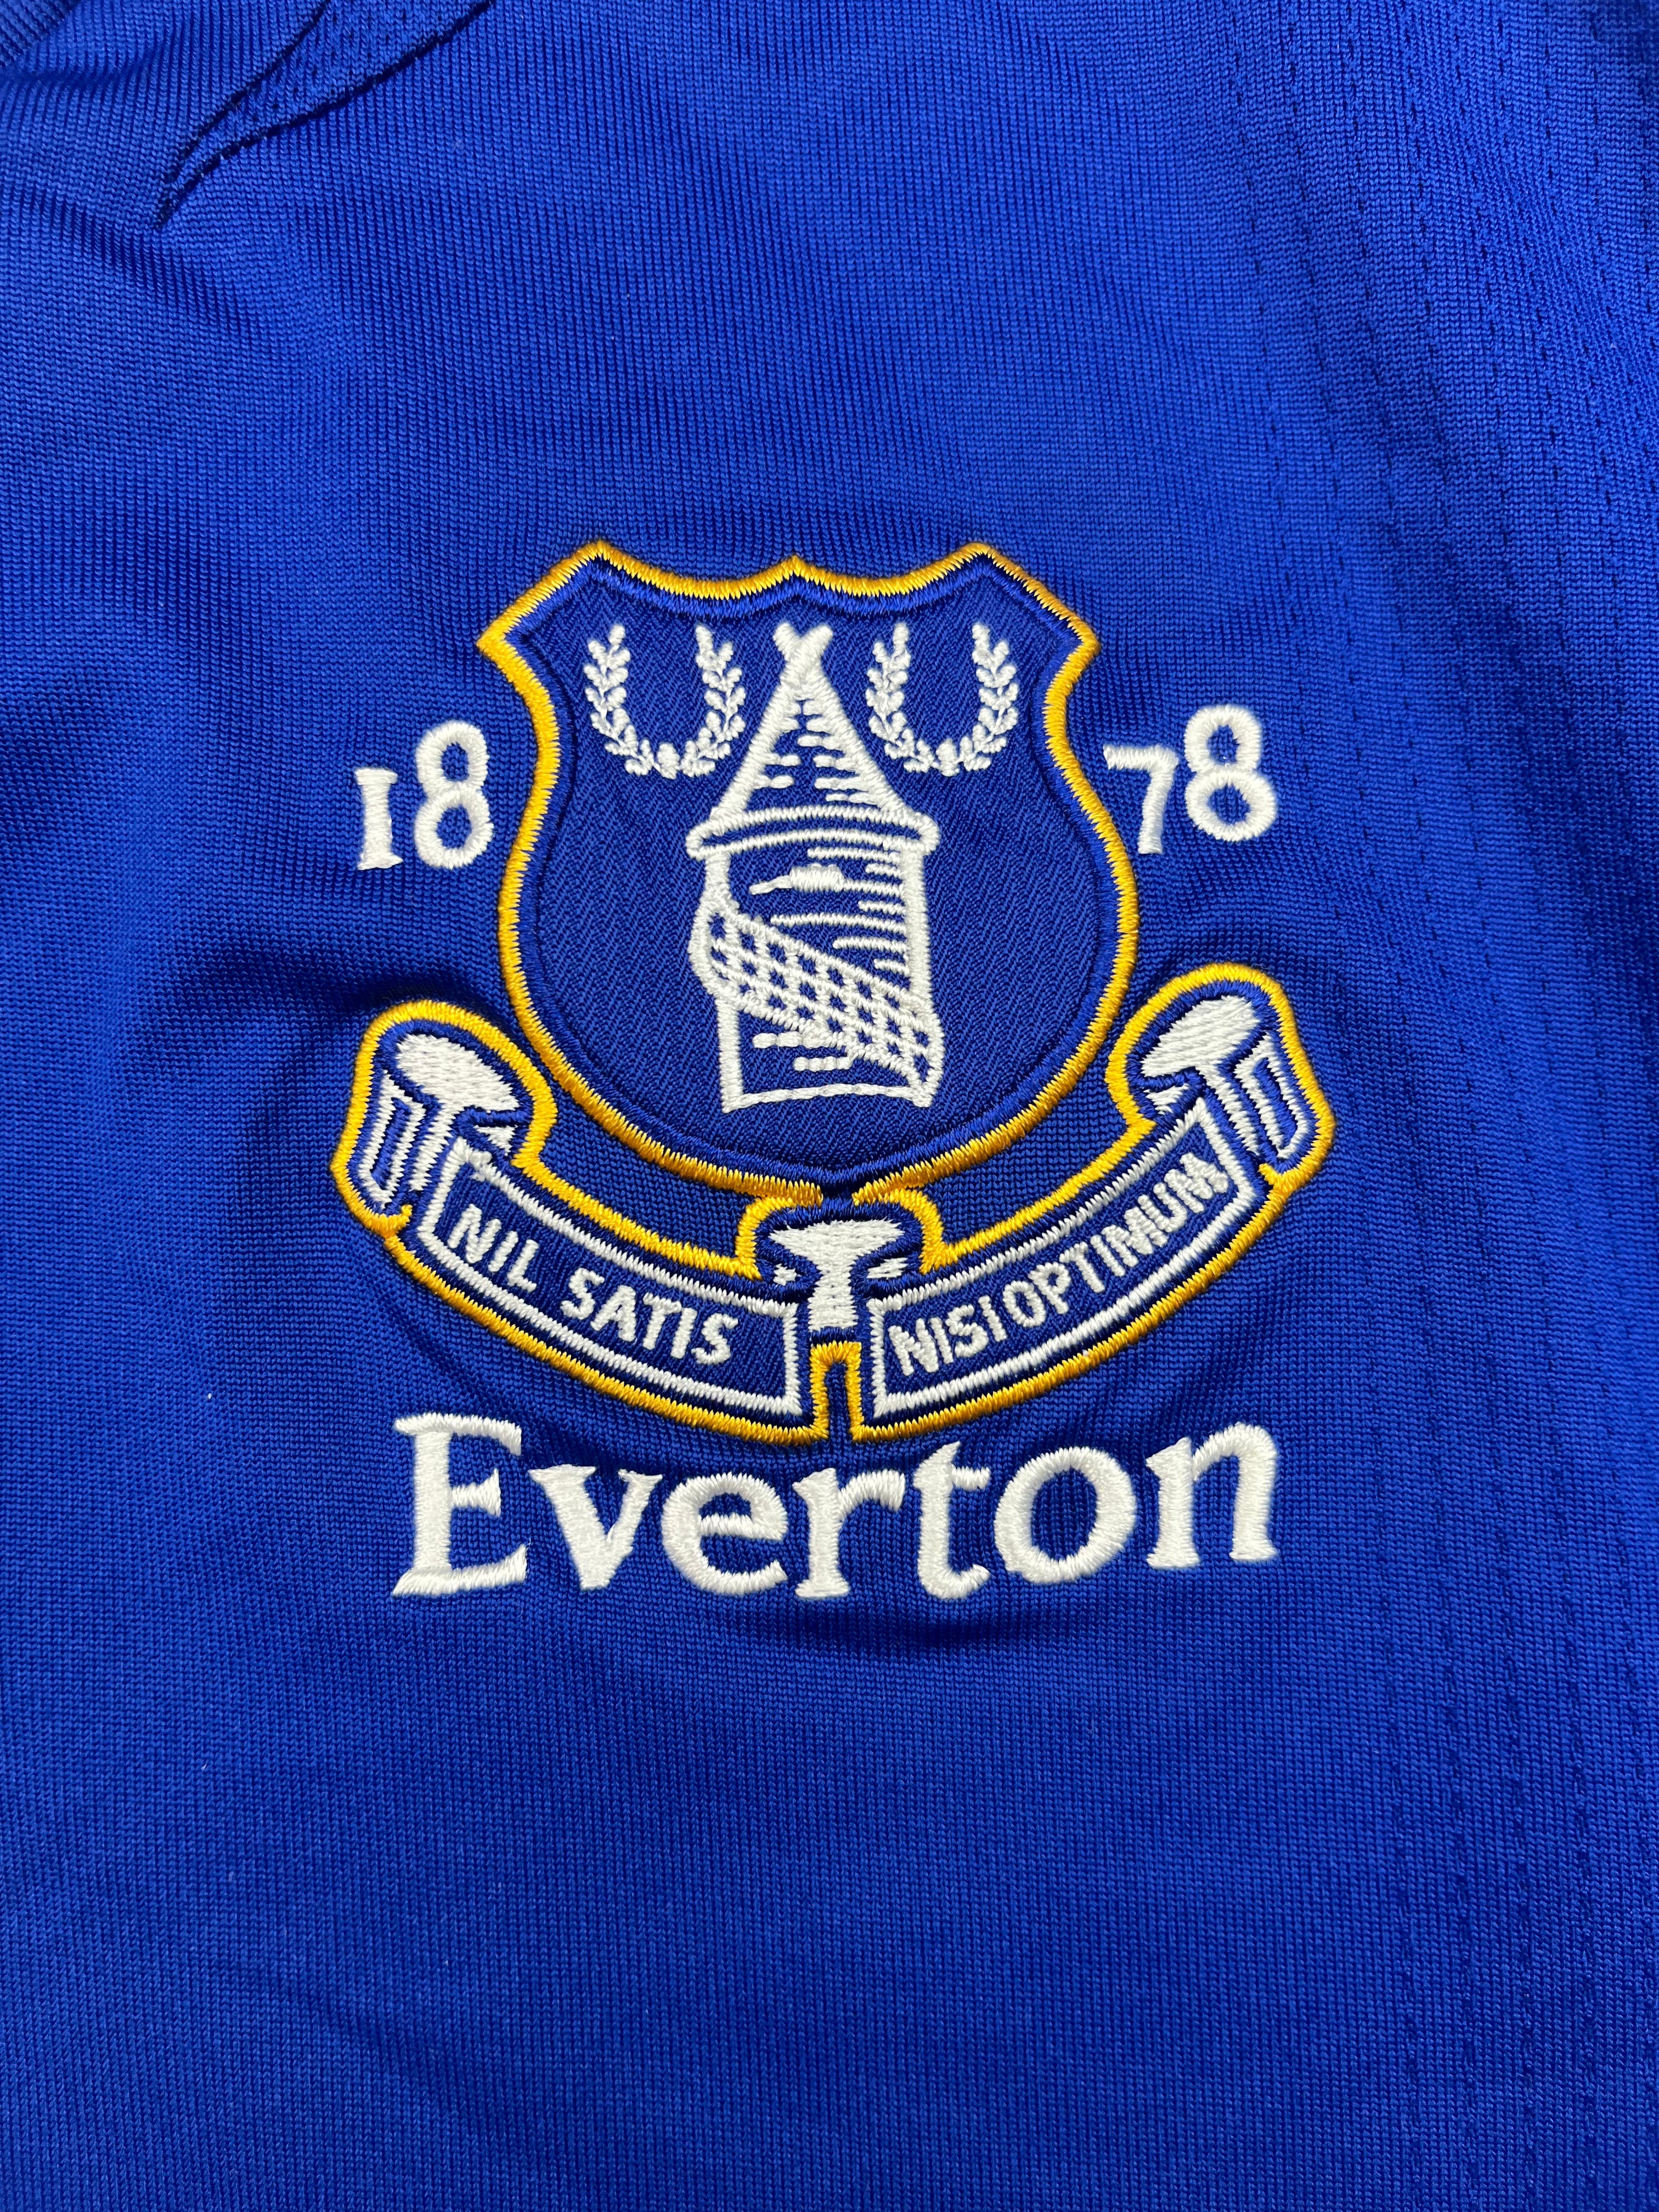 2007/08 Everton Home Shirt (XL) 9/10